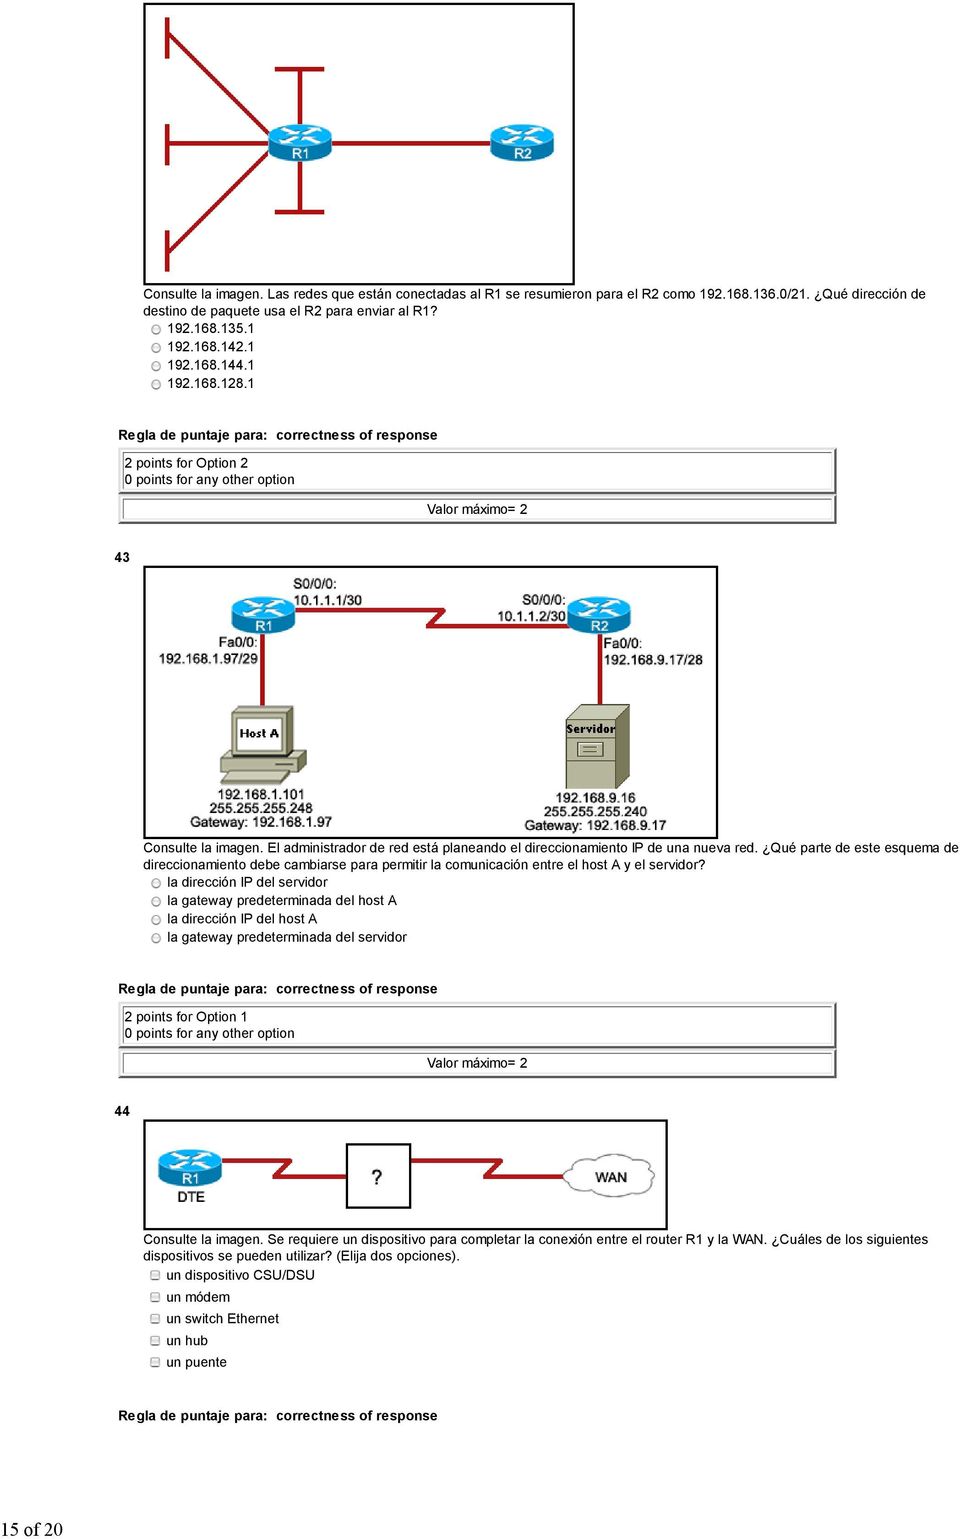 Qué parte de este esquema de direccionamiento debe cambiarse para permitir la comunicación entre el host A y el servidor?